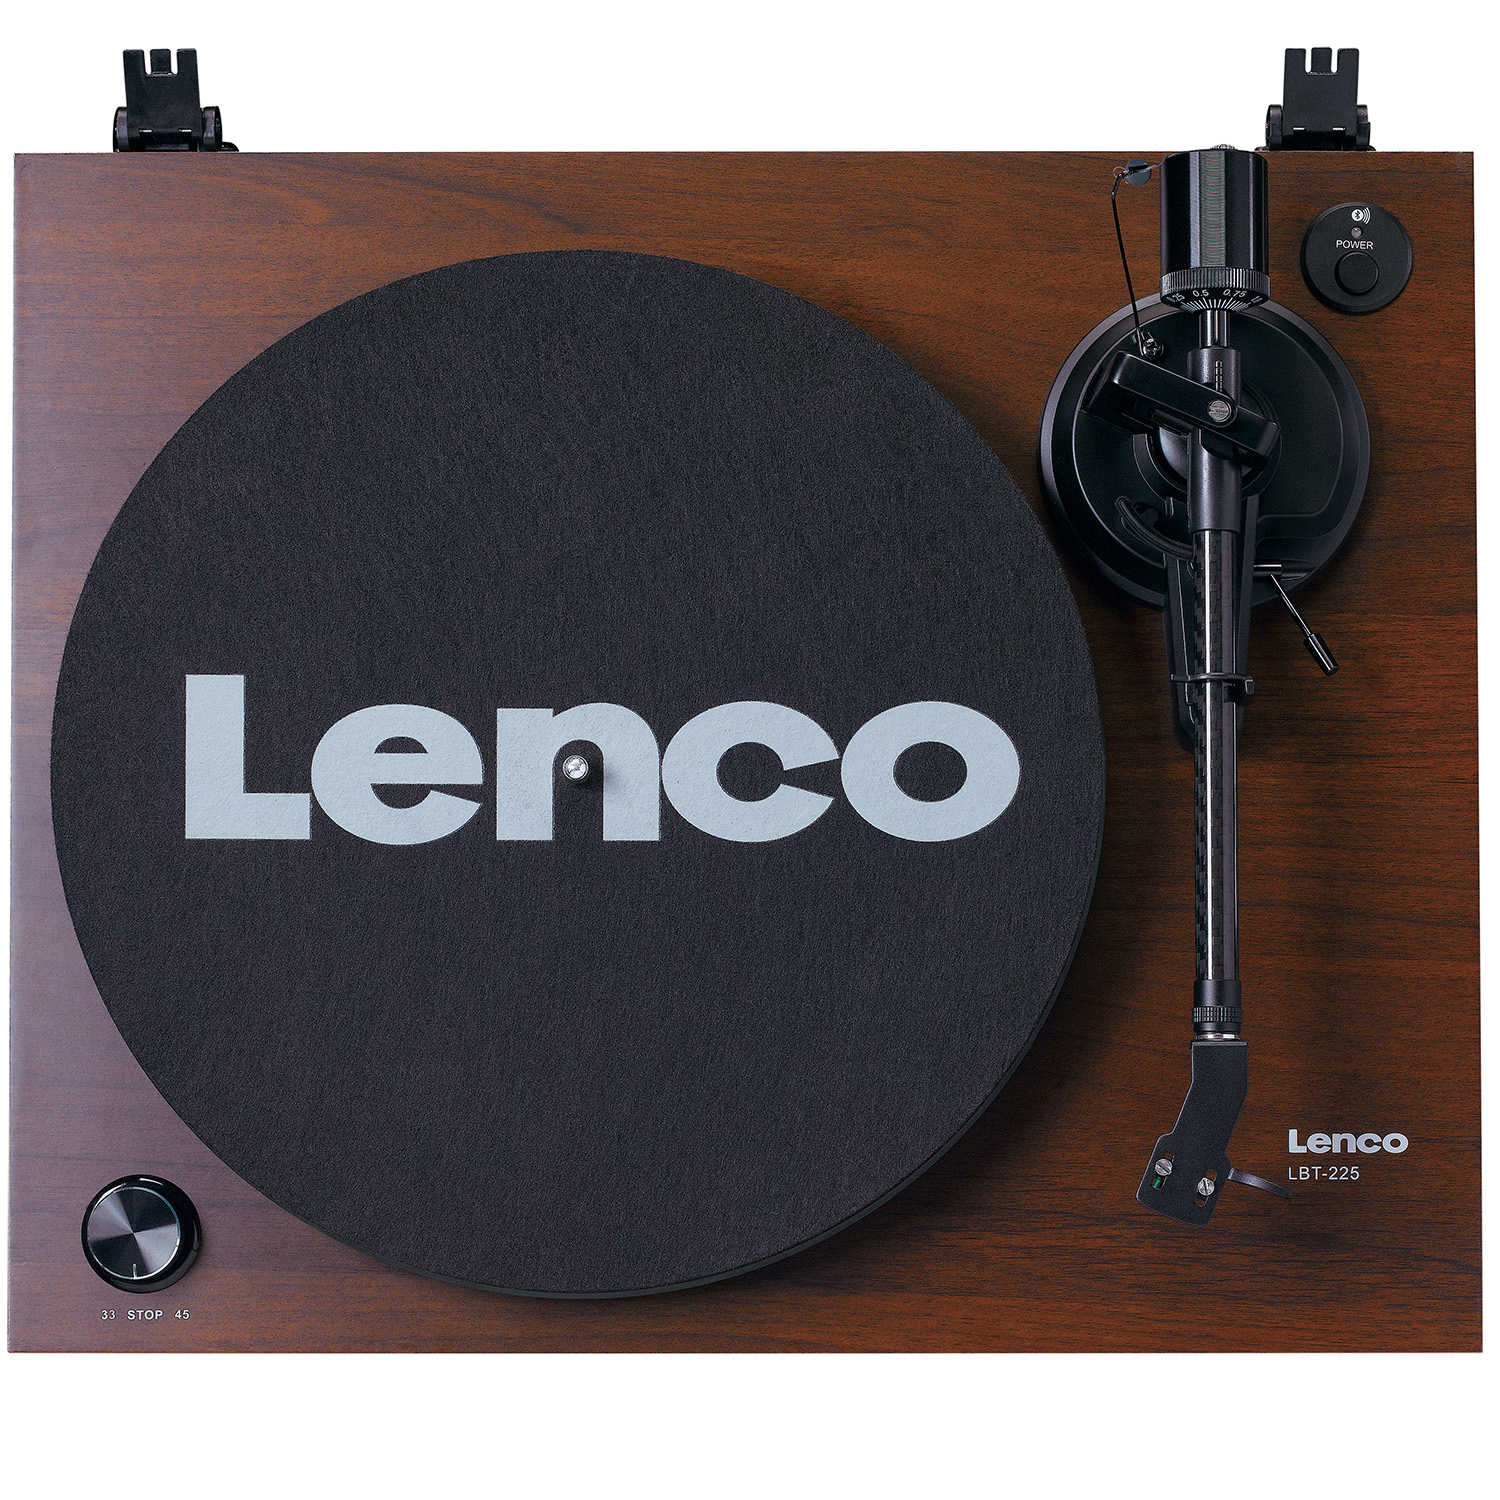 LENCO Lenco LBT-225 Walnut Виниловый проигрыватель с функцией передачи звука по Bluetooth